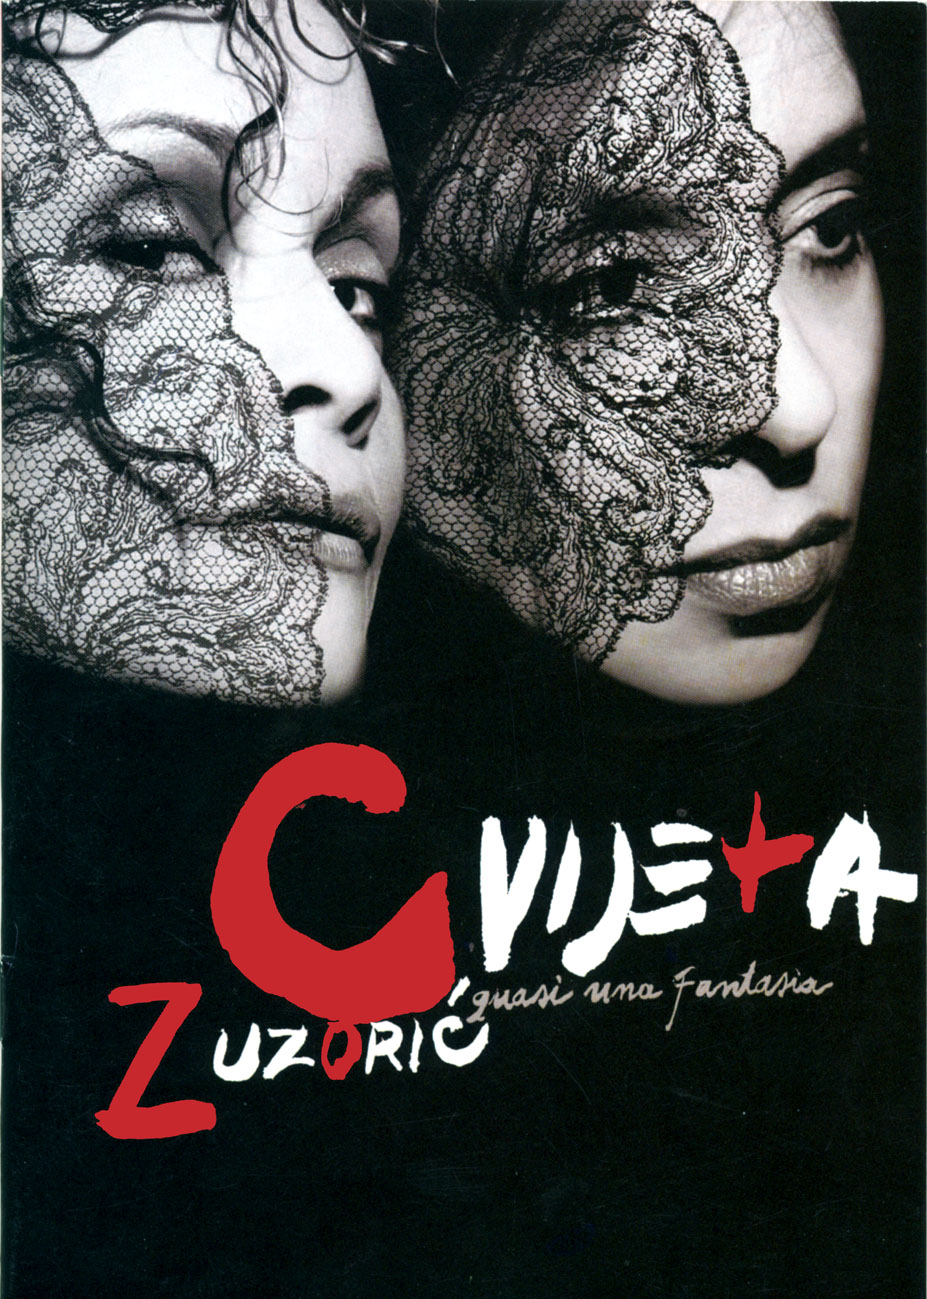 2005 Plakat predstave Cvijeta Zuzorić